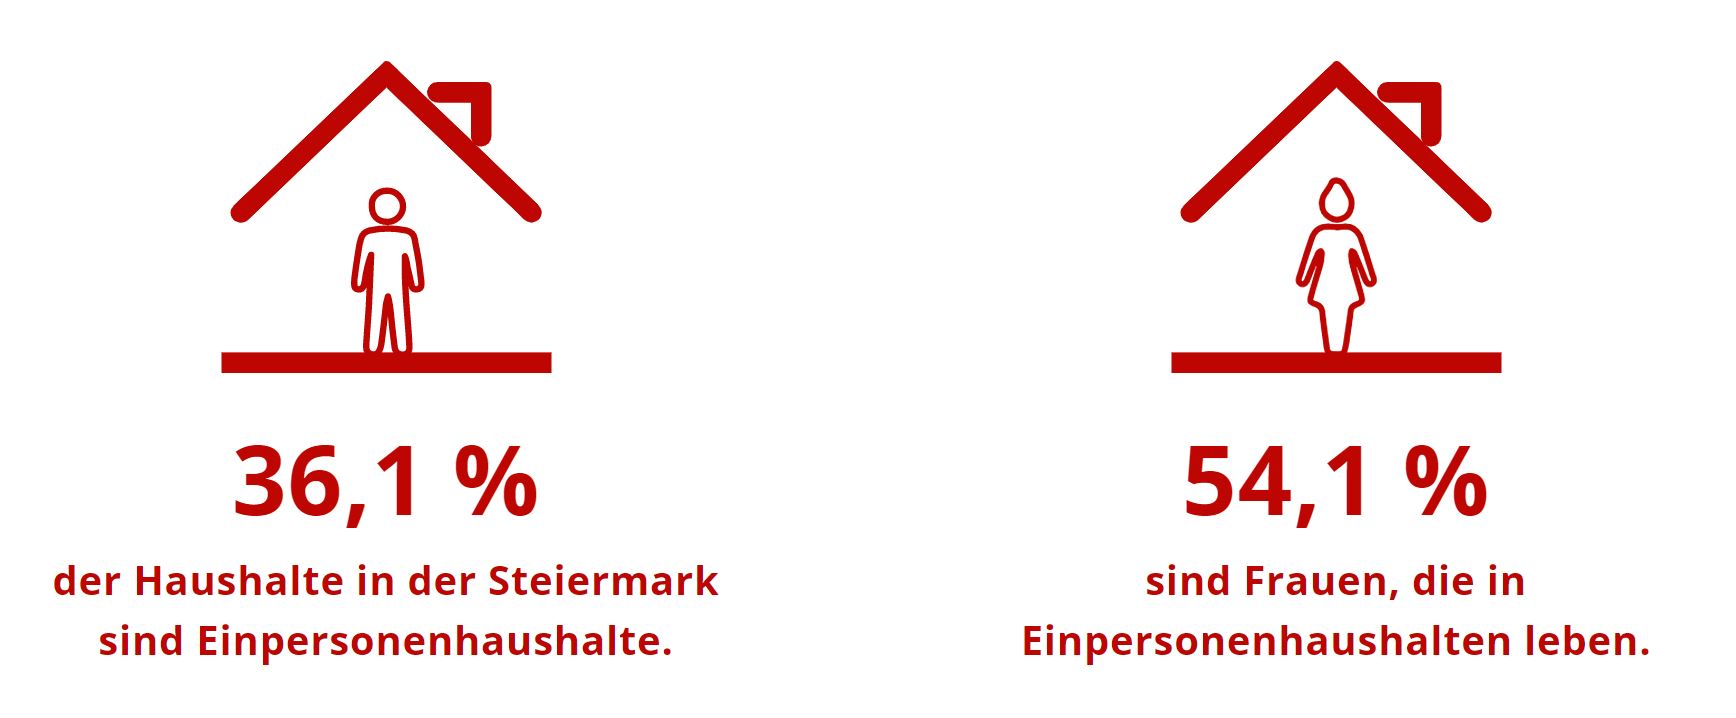 36,1 Prozent der Haushalte in der Steiermark sind Ein-Personen-Haushalte. 54,1 Prozent sind Frauen, die in Ein-Personen-Haushalten leben.